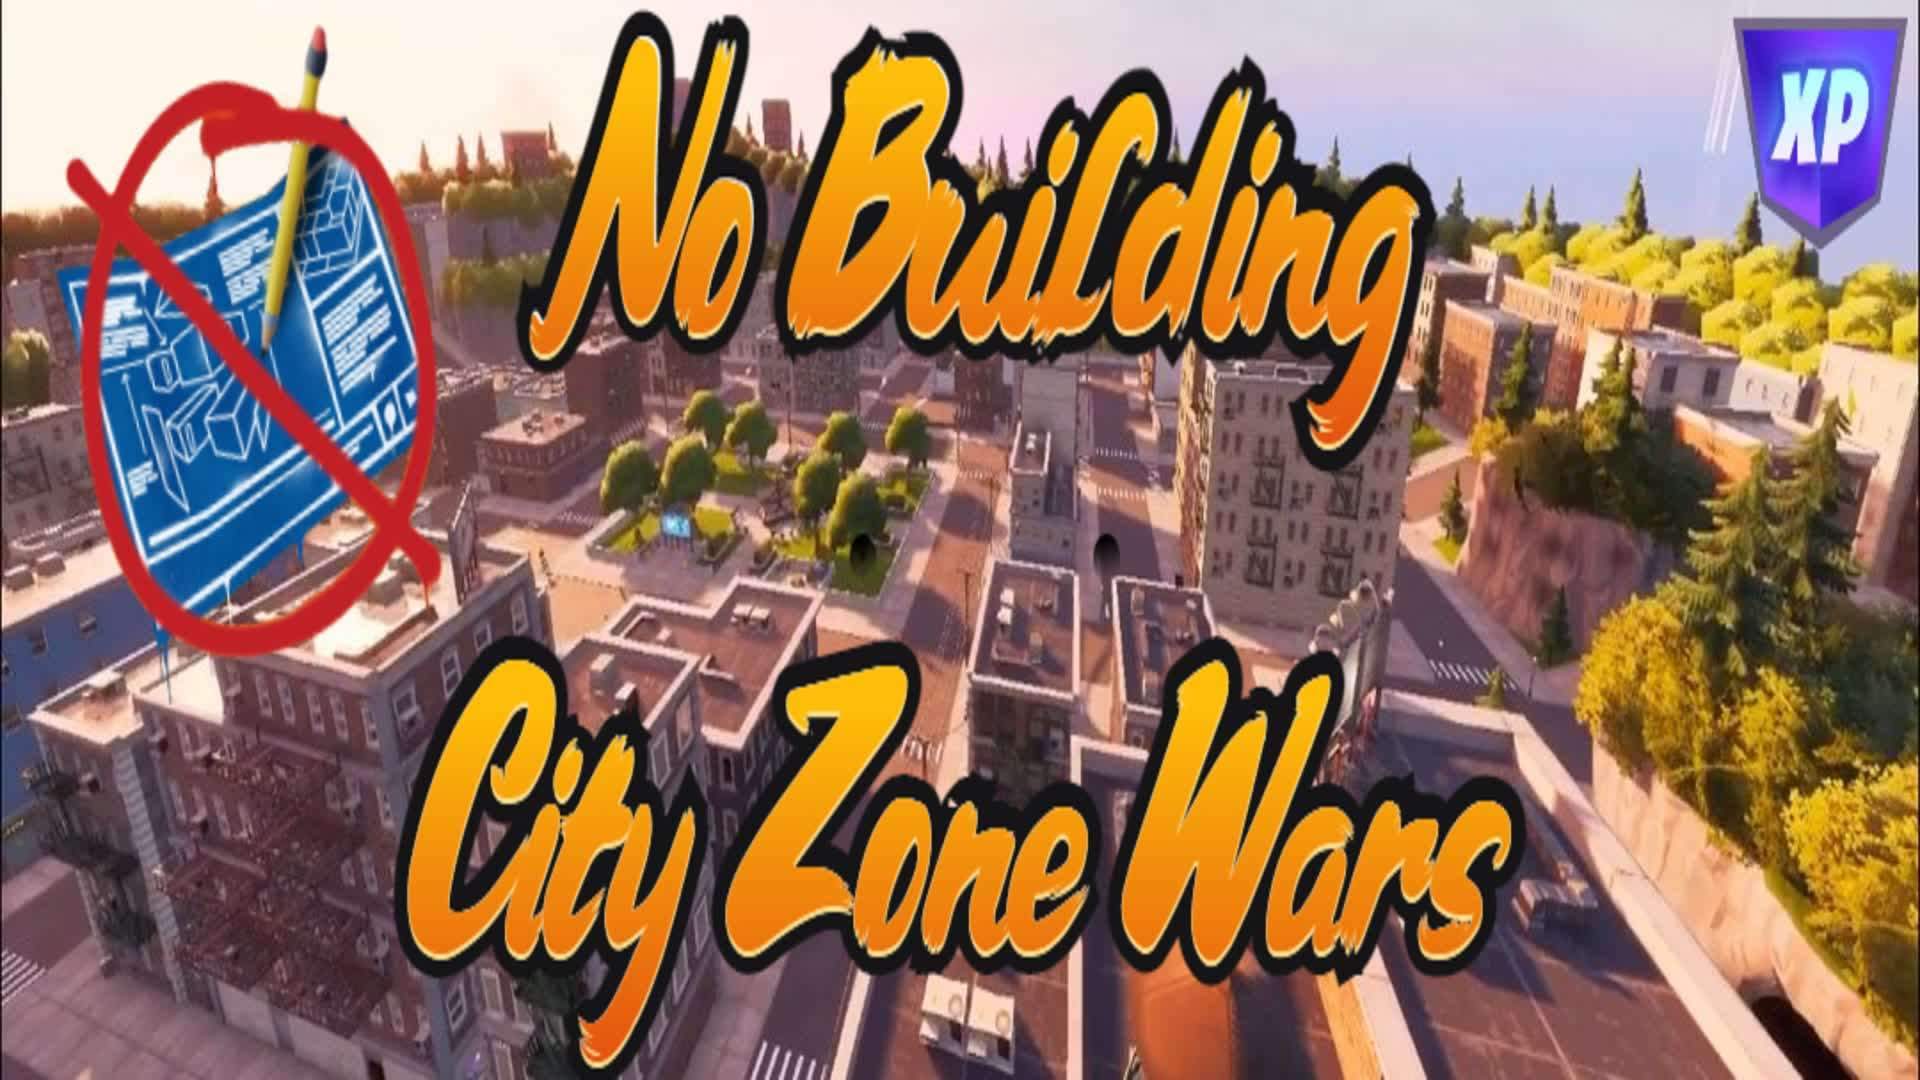 NO BUILDING ZONEWARS 🏙 CITY 🏙